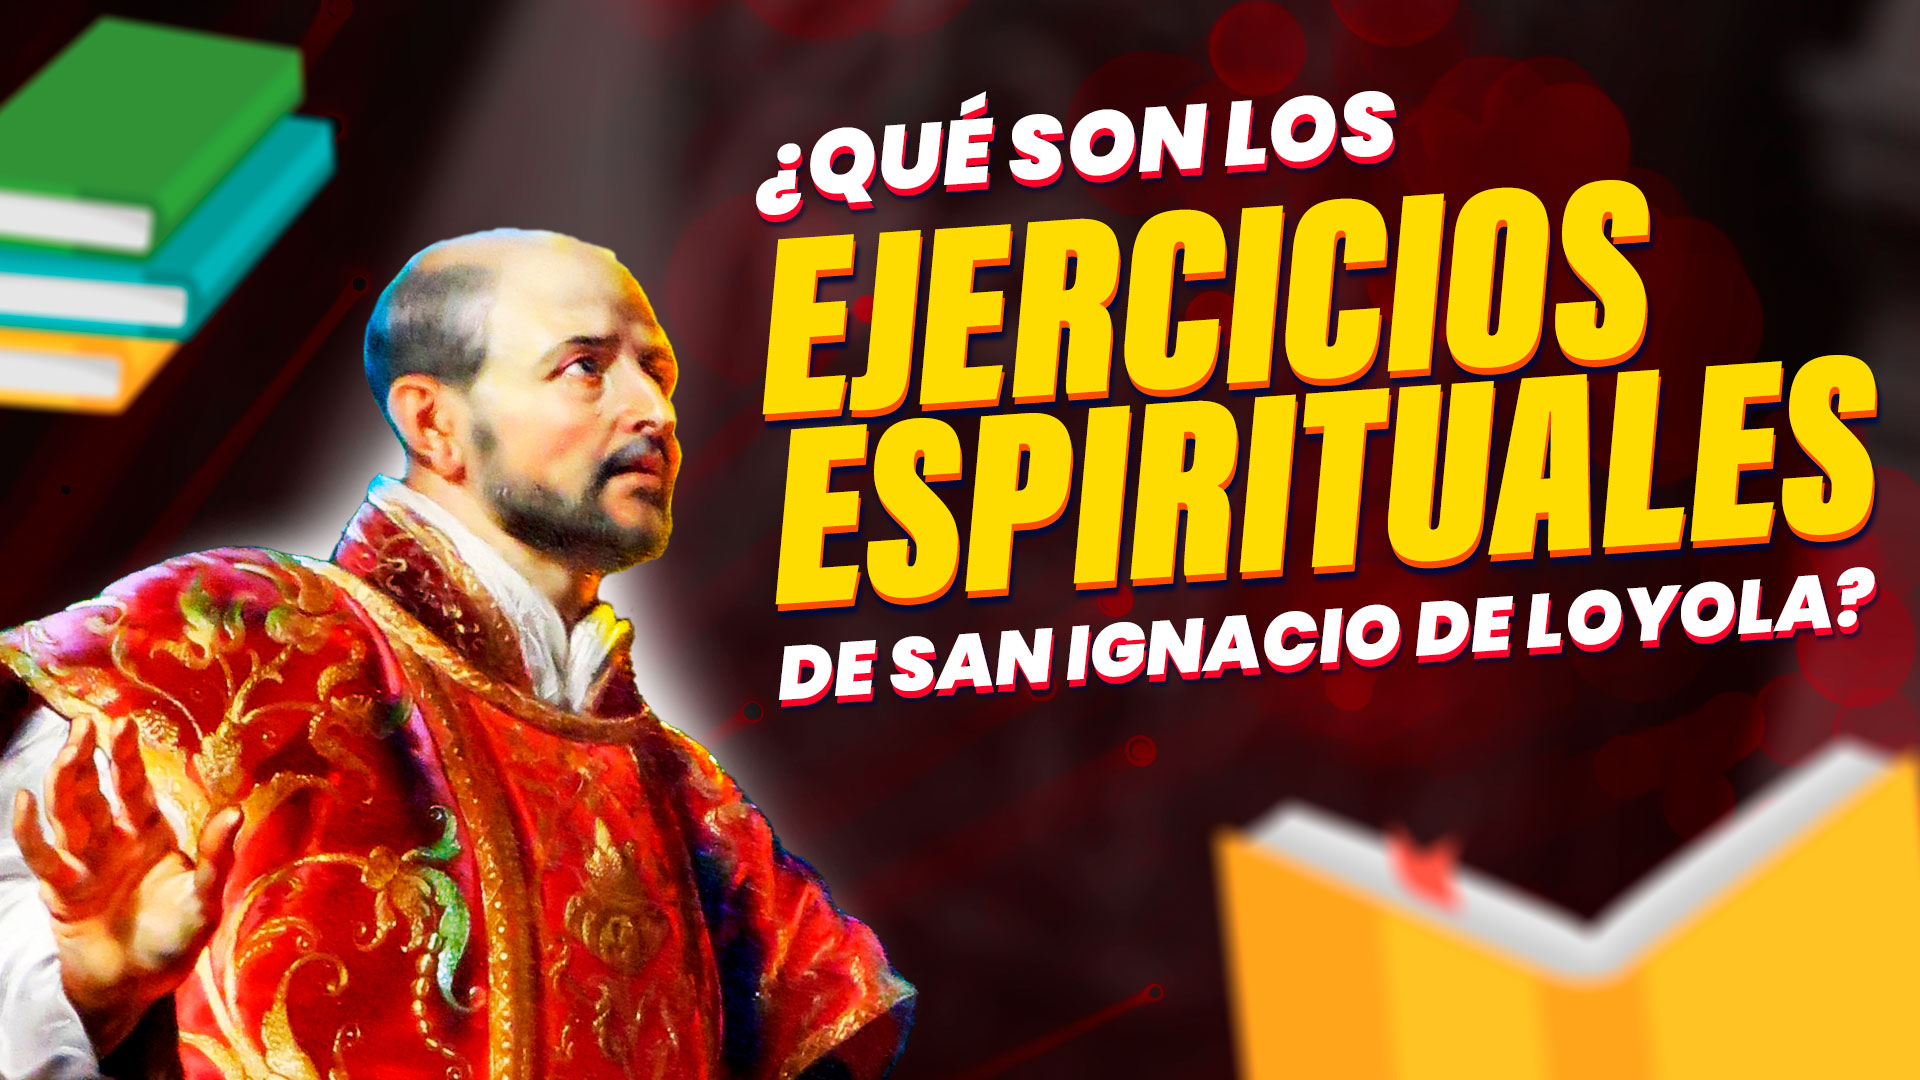 Qué son los Ejercicios Espirituales de San Ignacio de Loyola. Enriquísimo Tv canal católico de YouTube y Tik Tok. Enrique Vidal Flores